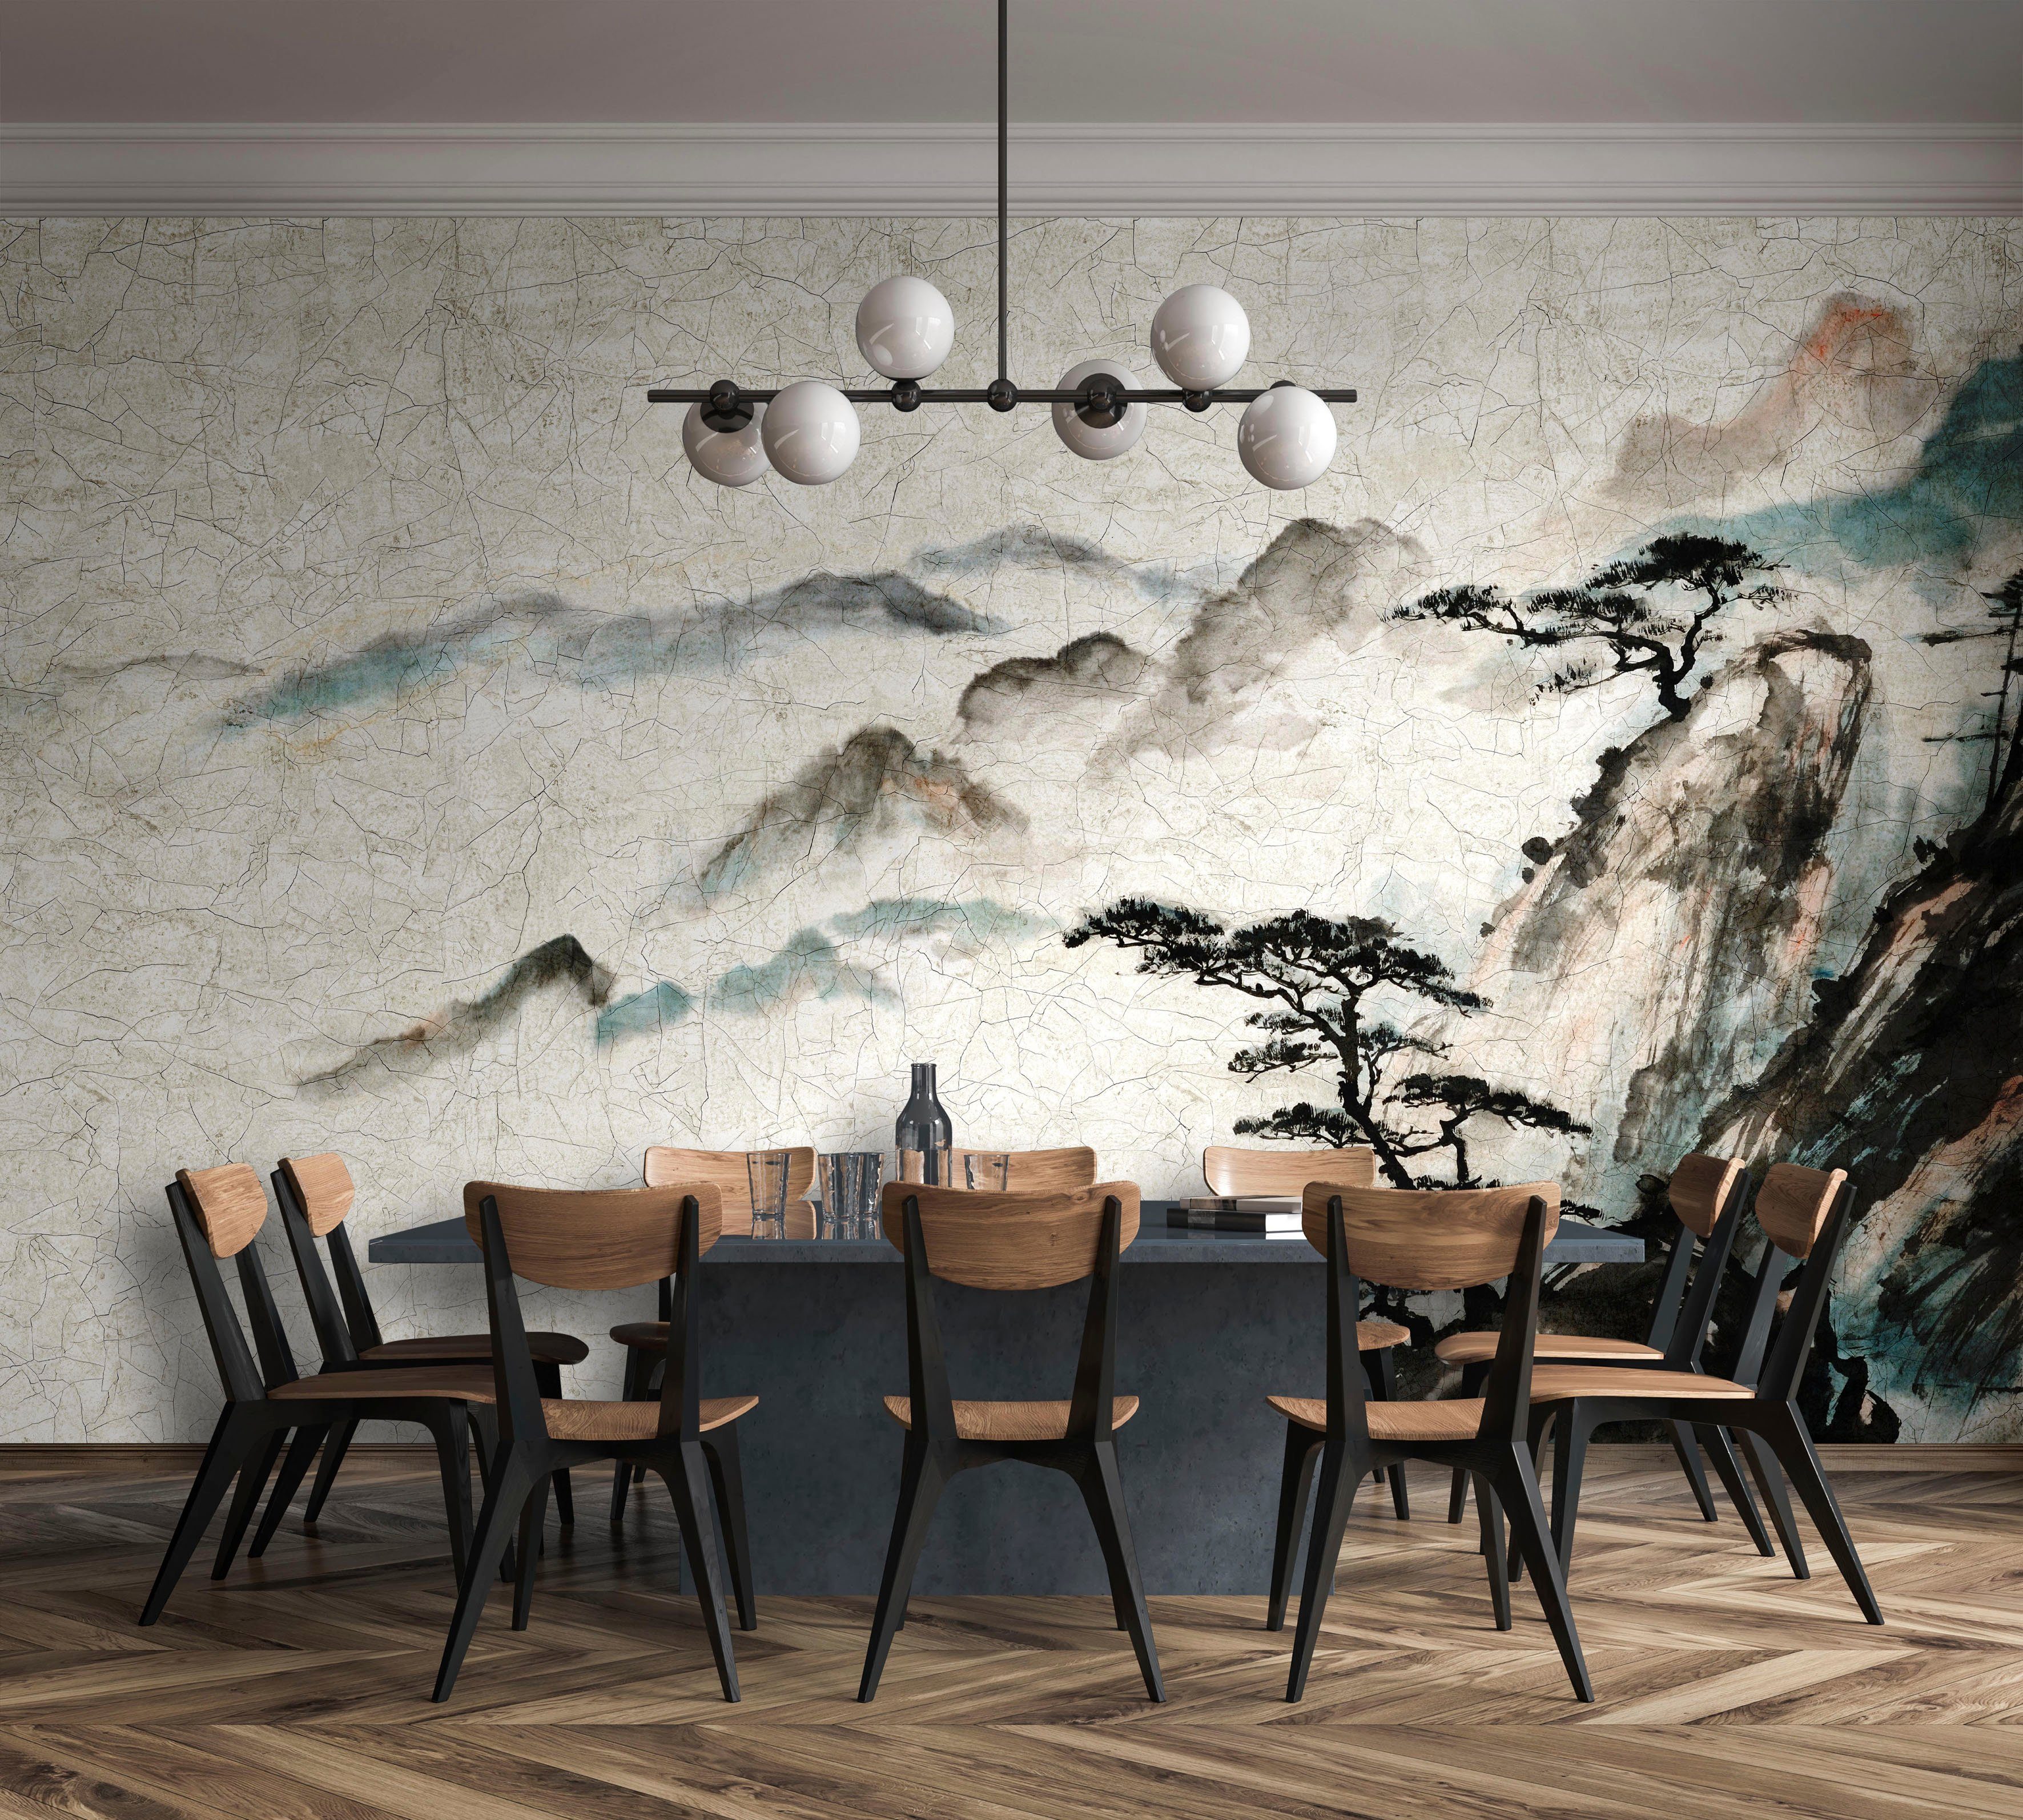 Marburg Fototapete Hanako, glatt, matt, für Schlafzimmer Küche Vliestapete Wohnzimmer beige moderne